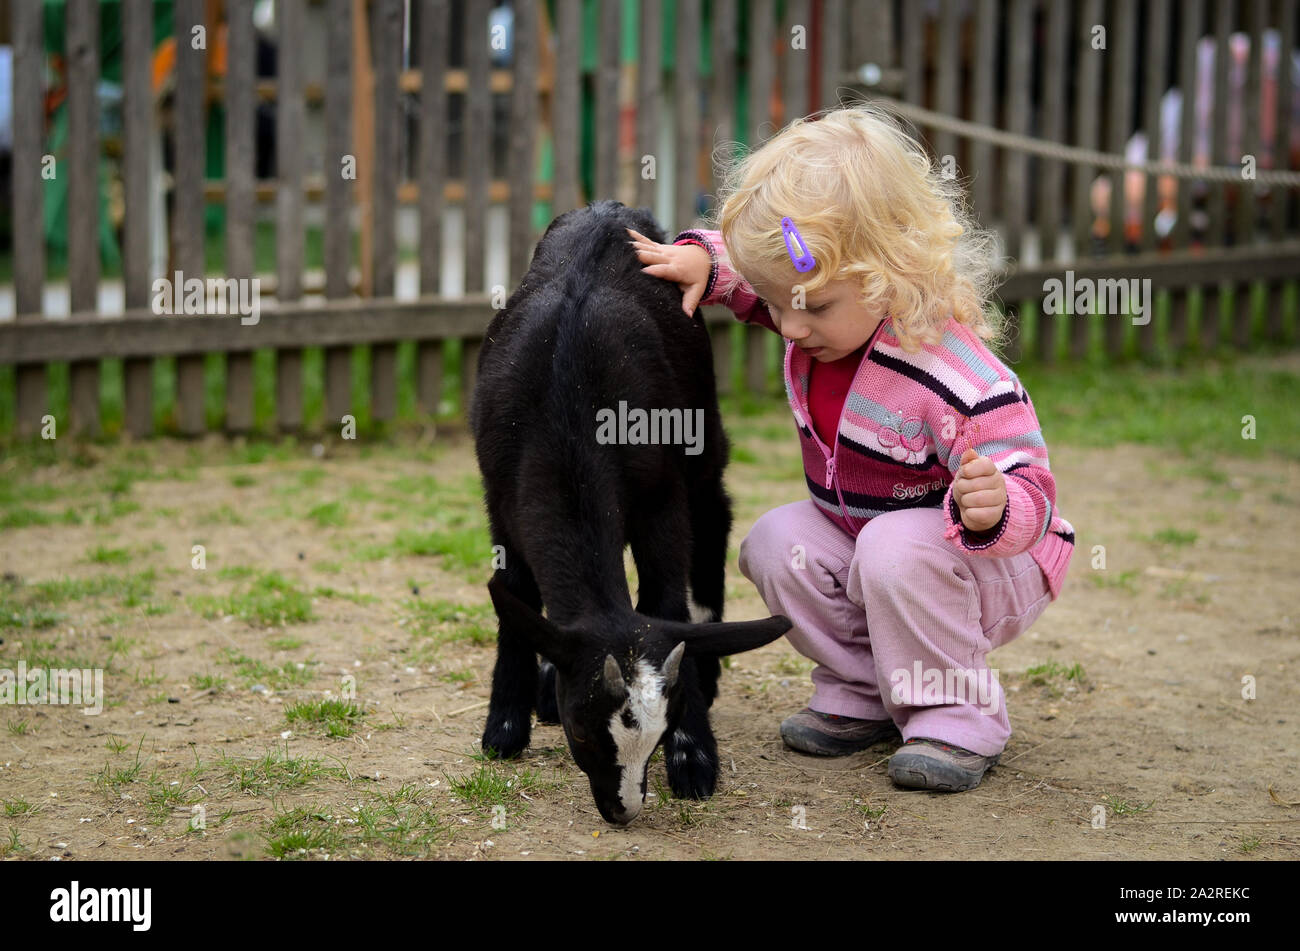 L'enfant blond caressant une chèvre Banque D'Images